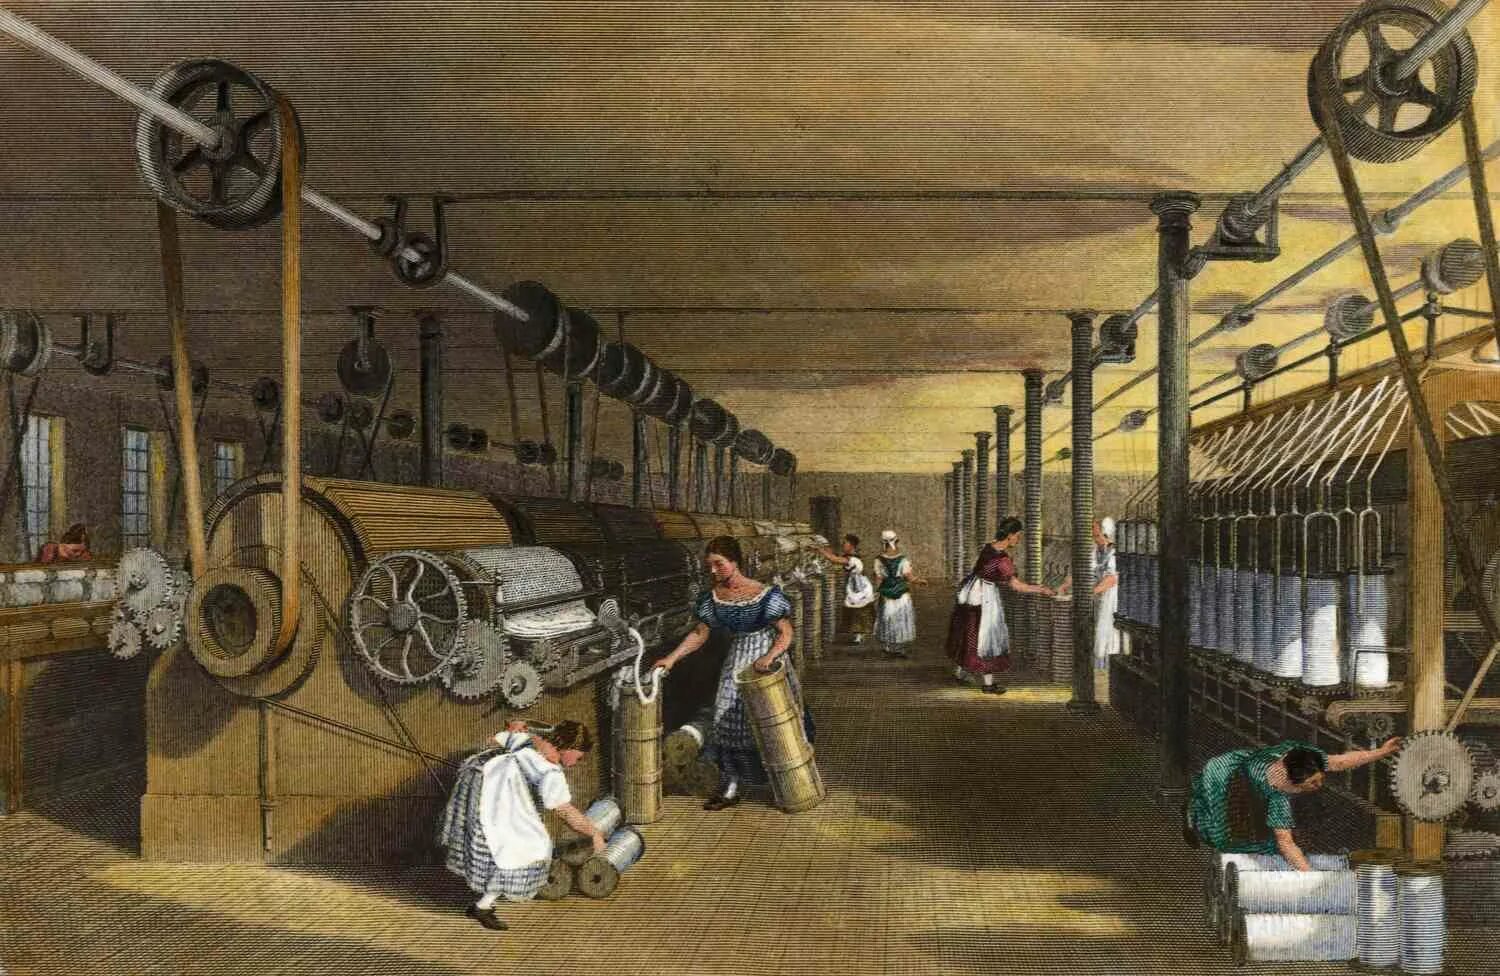 Мануфактура и фабрика в Англии 18 век. Фабрика Ткацкая Англия 19 век. Ткацкая фабрика в Англии 18 вае. Промышленная революция в Англии 19 век.